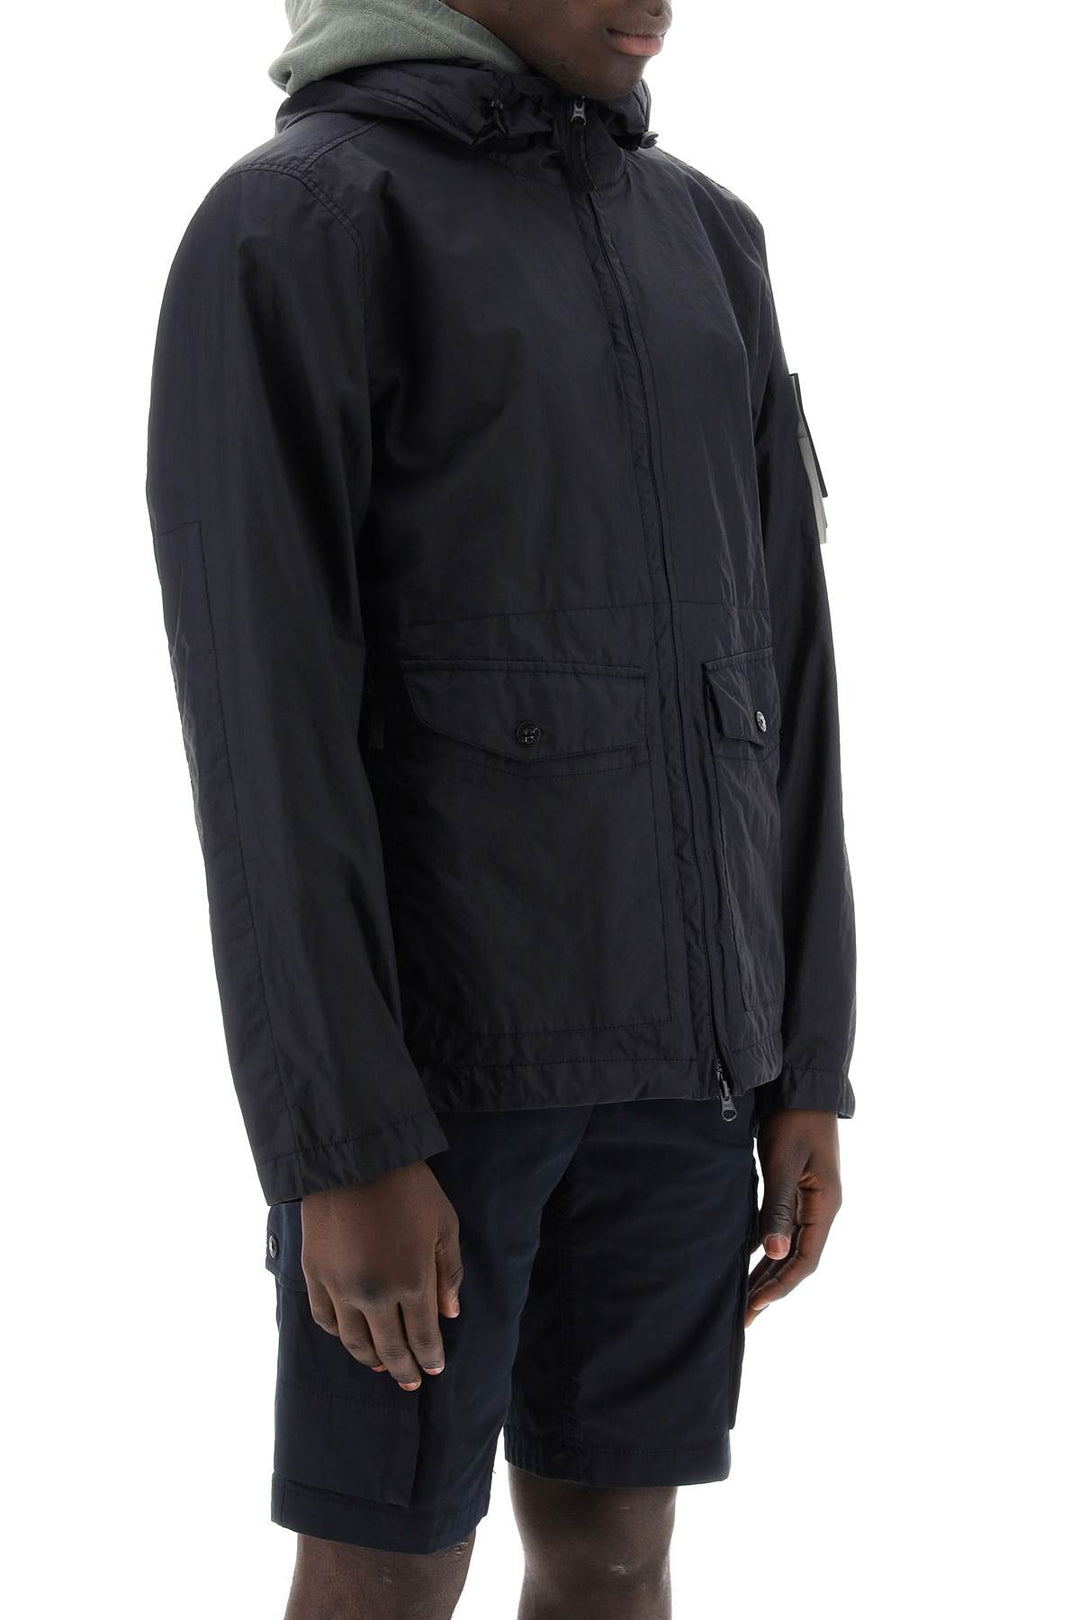 Stone Island Membrana 3l Tc Hooded Jacket   Blu